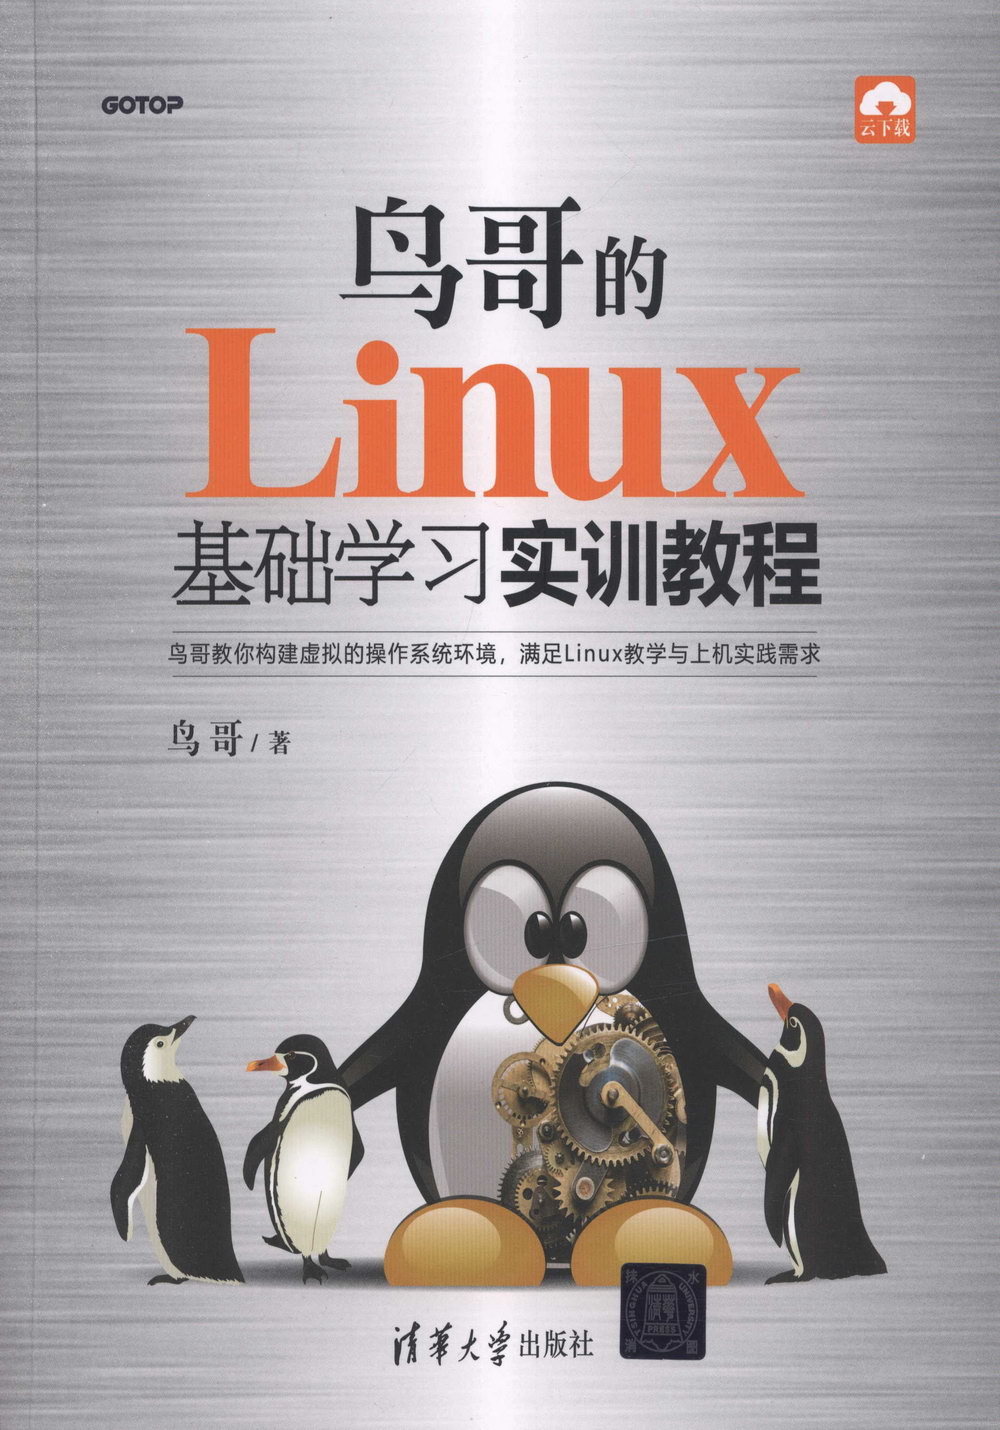 鳥哥的Linux基礎學習實訓教程